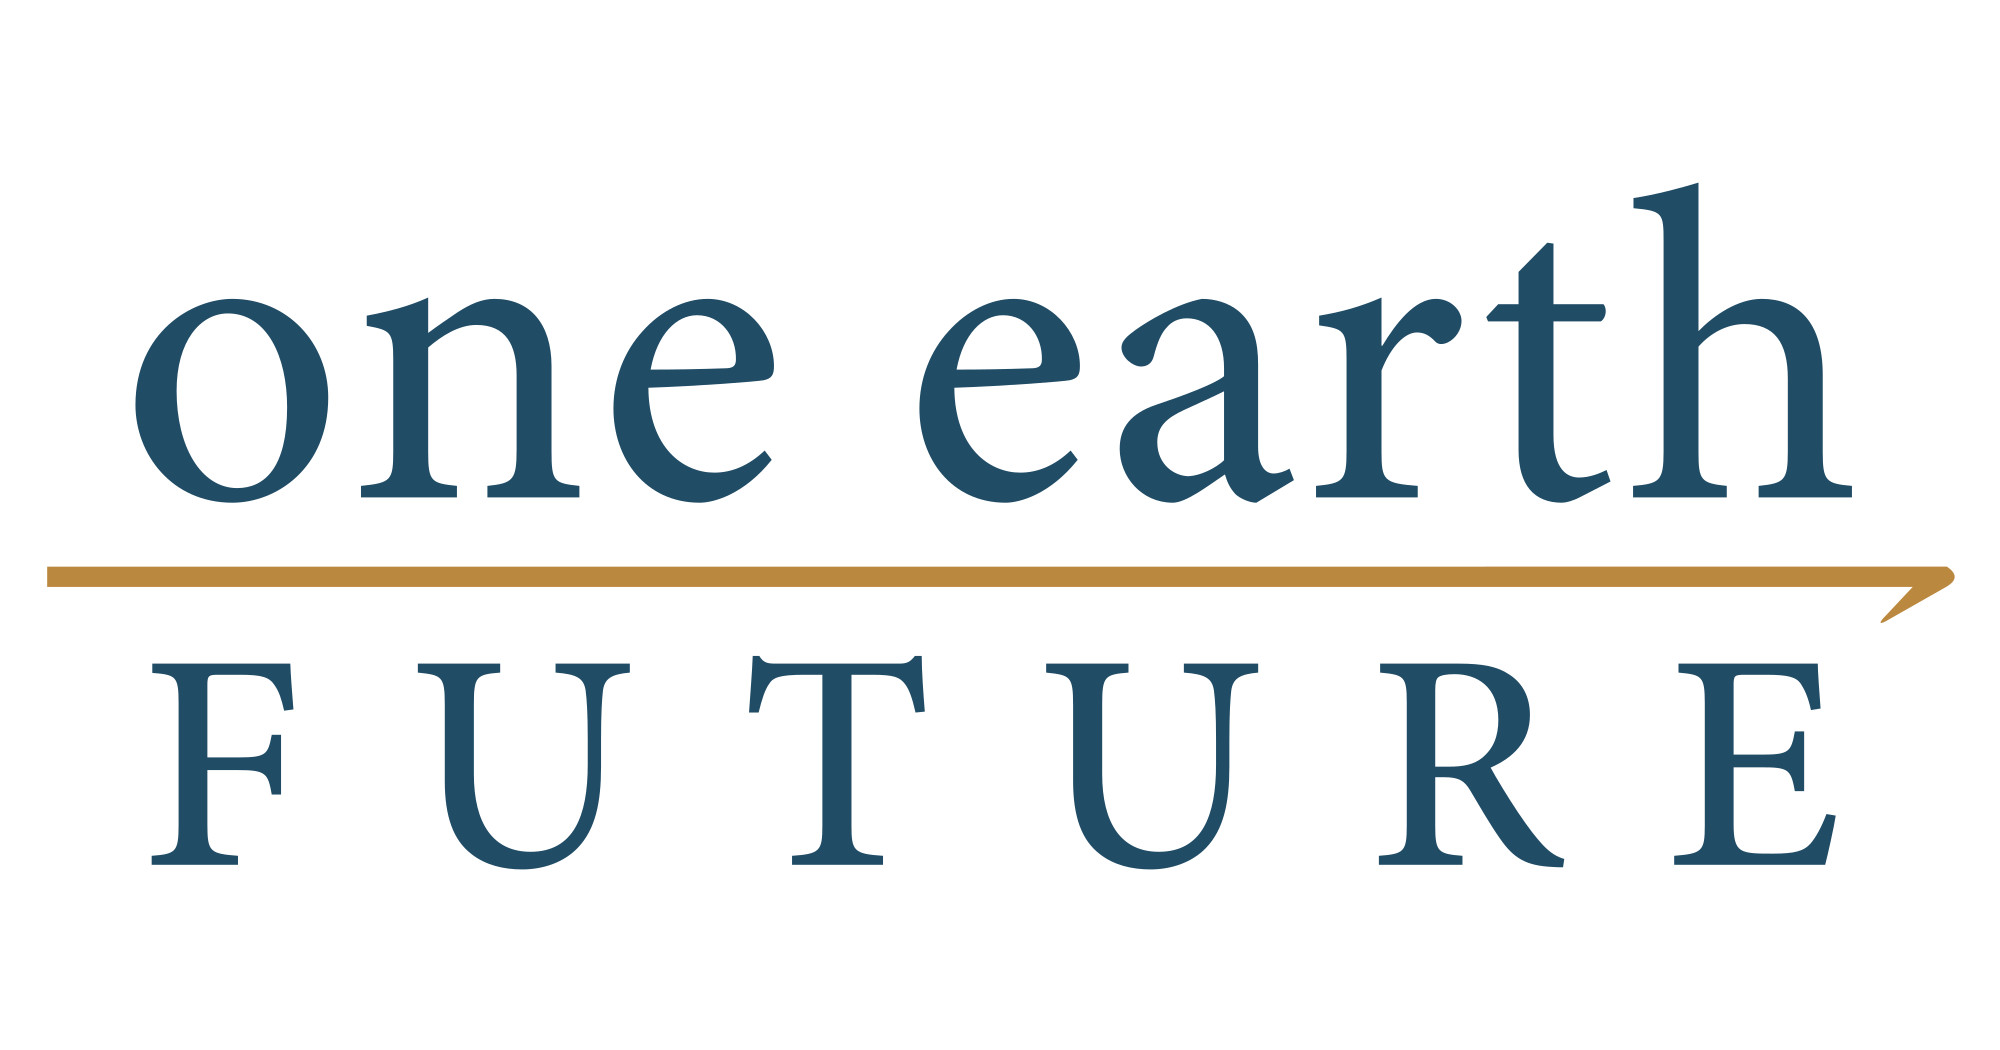 One earth future